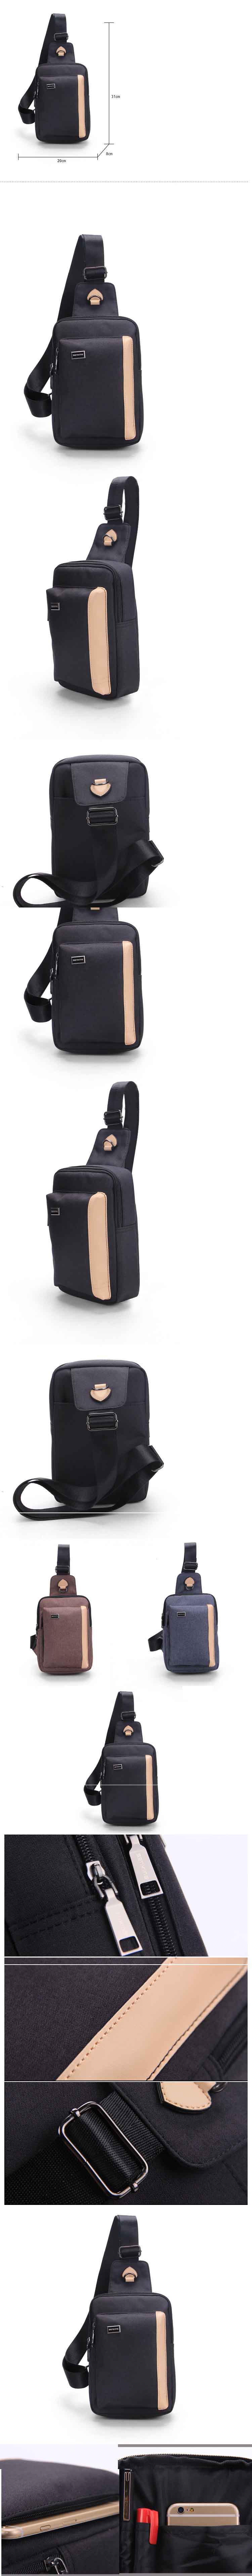 jual tas satu tali pria keren dengan desain simple cocok untuk membawa gadget saat bepergian , klik dan pesan online tas pria terlengkap hanya di pfp store